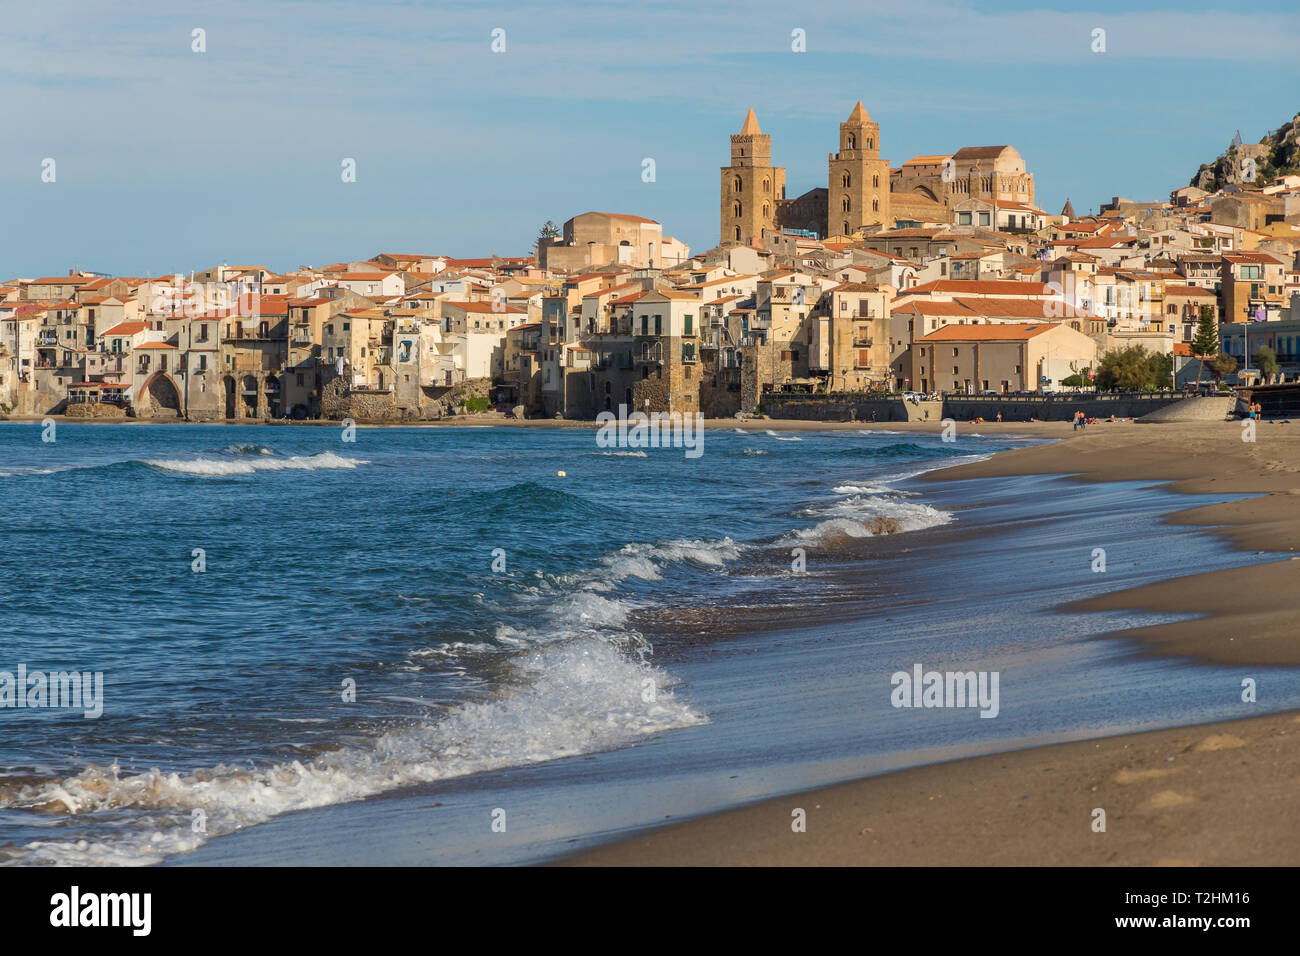 La cathédrale et la vieille ville vue de la plage, Cefalù, Sicile, Italie, Europe Banque D'Images